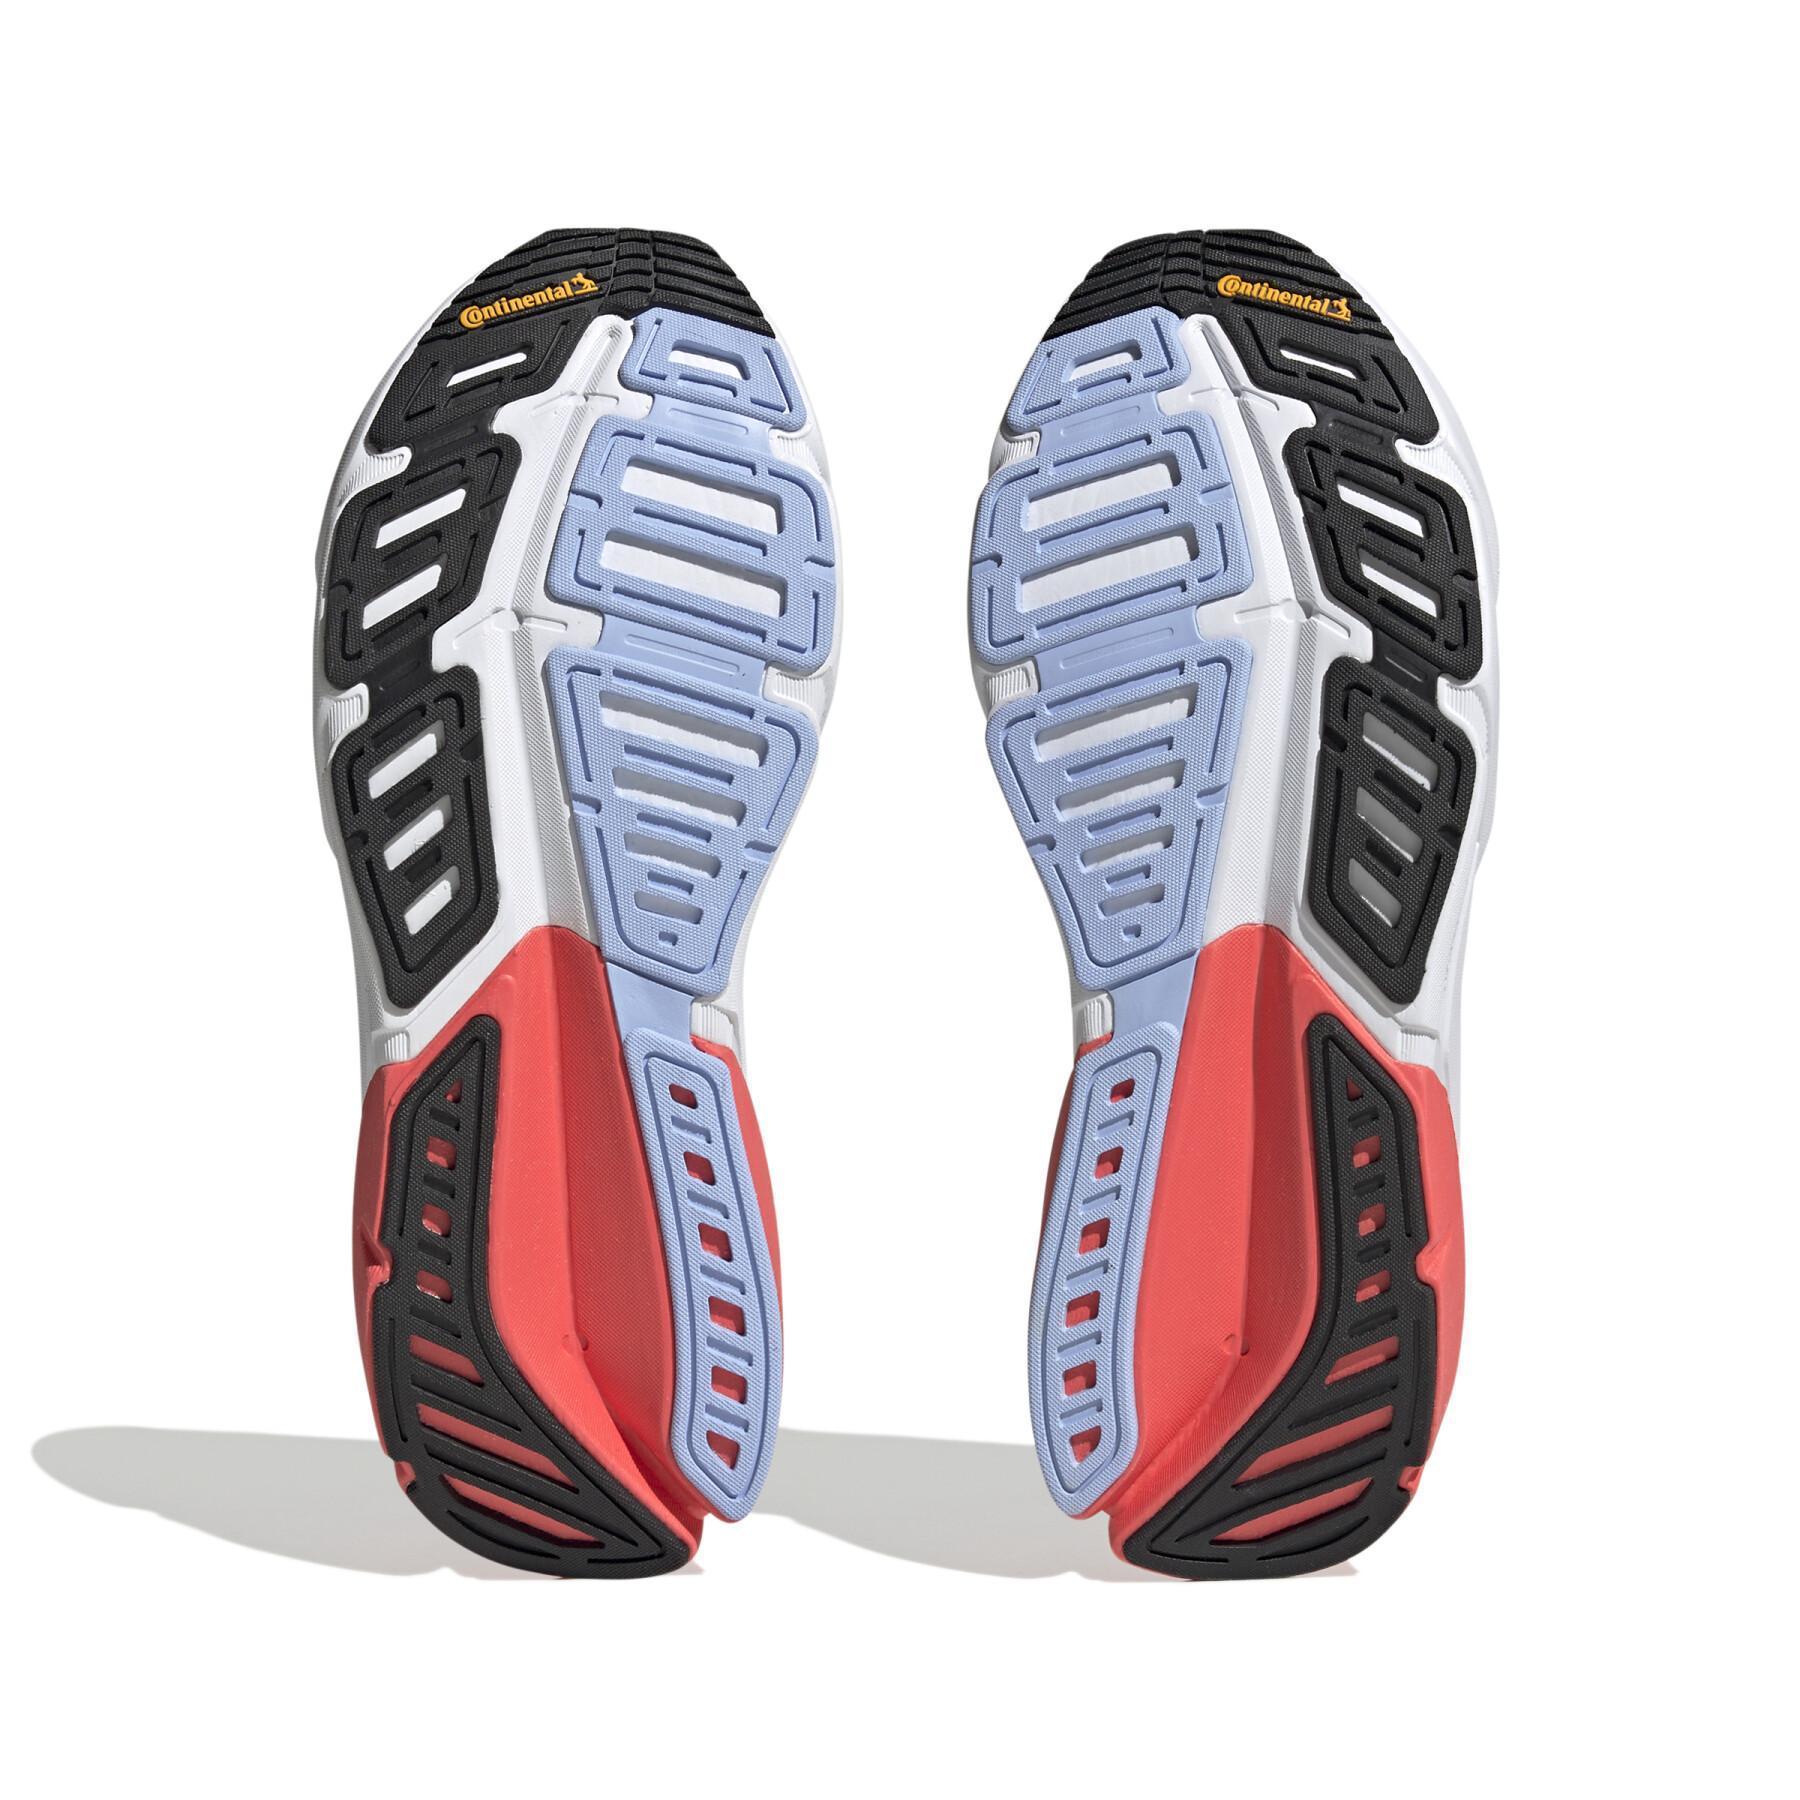 Schuh von running adidas Adistar 2.0